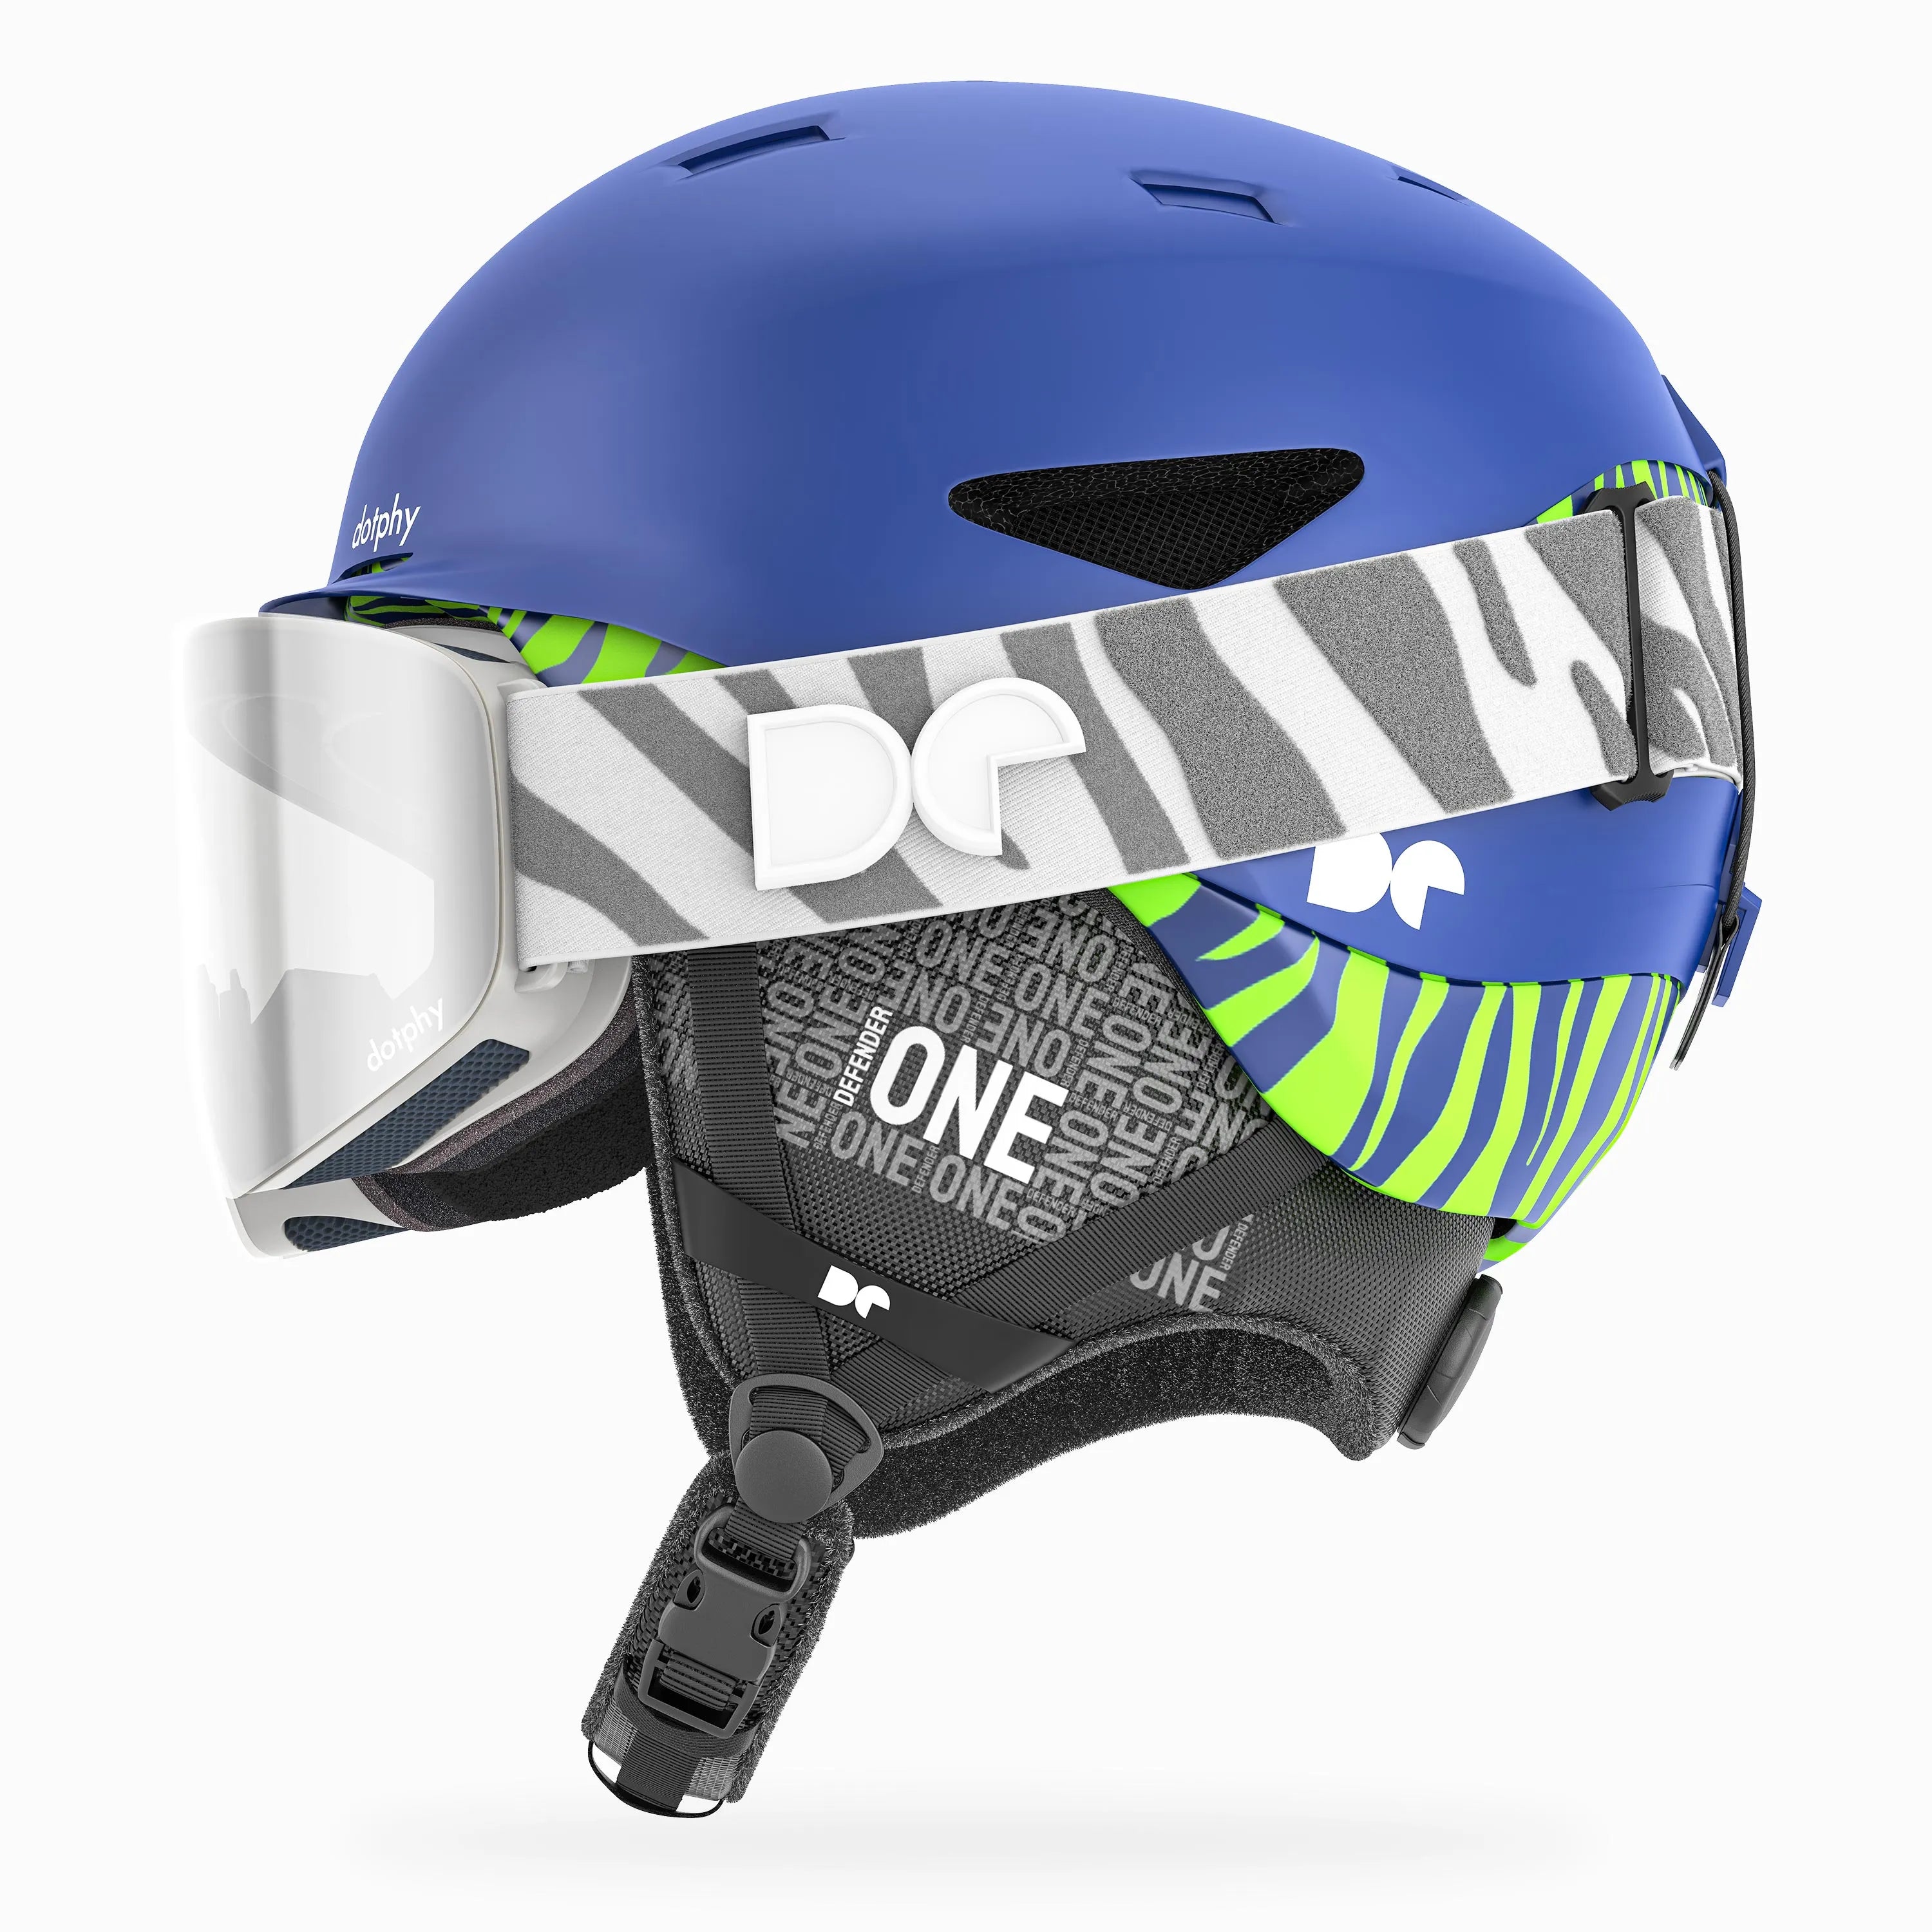 Defender One Royal Blue Ski Helmet + Defender 1000 Pro Shadow Ski Goggle Combo